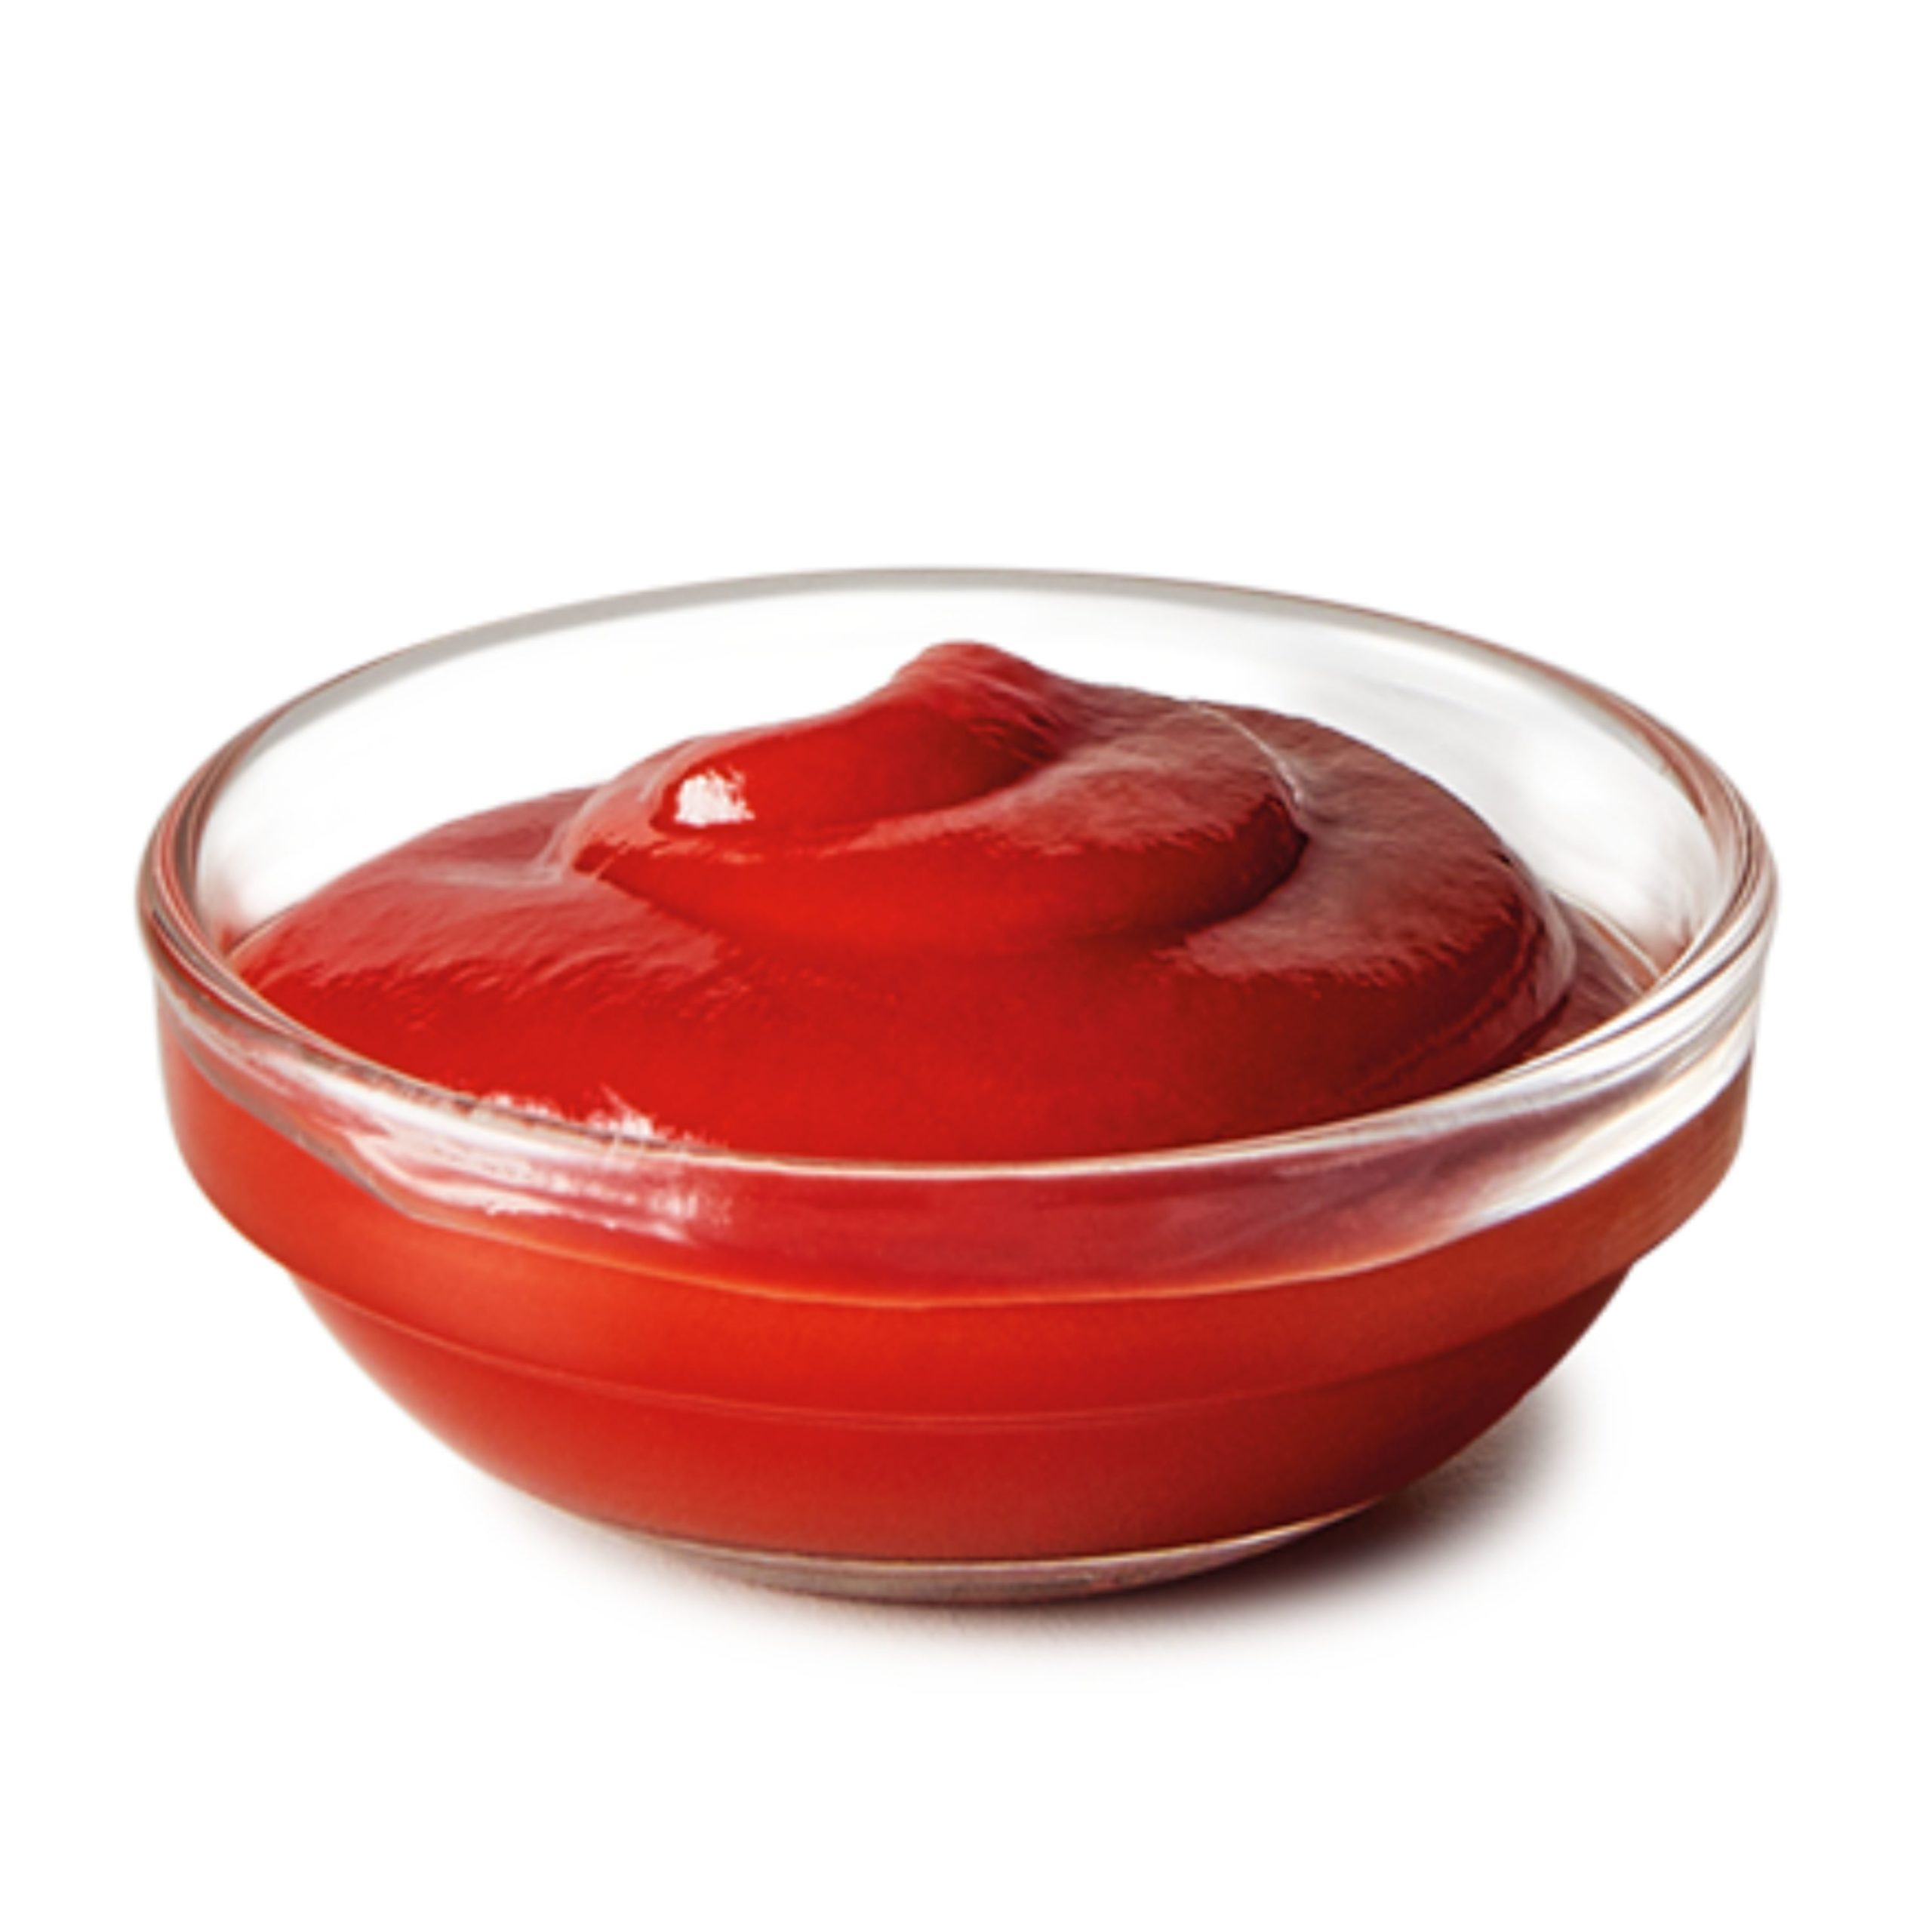 Прозрачный кетчуп. Кетчуп 50 гр. Соус. Соус томатный в соуснике. Соус в соуснике на белом фоне.